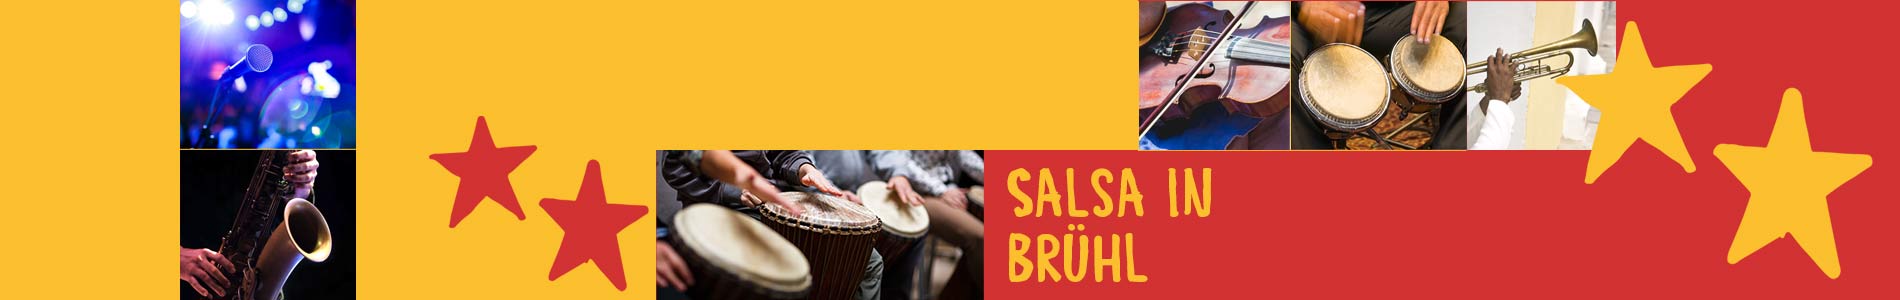 Salsa in Brühl – Salsa lernen und tanzen, Tanzkurse, Partys, Veranstaltungen